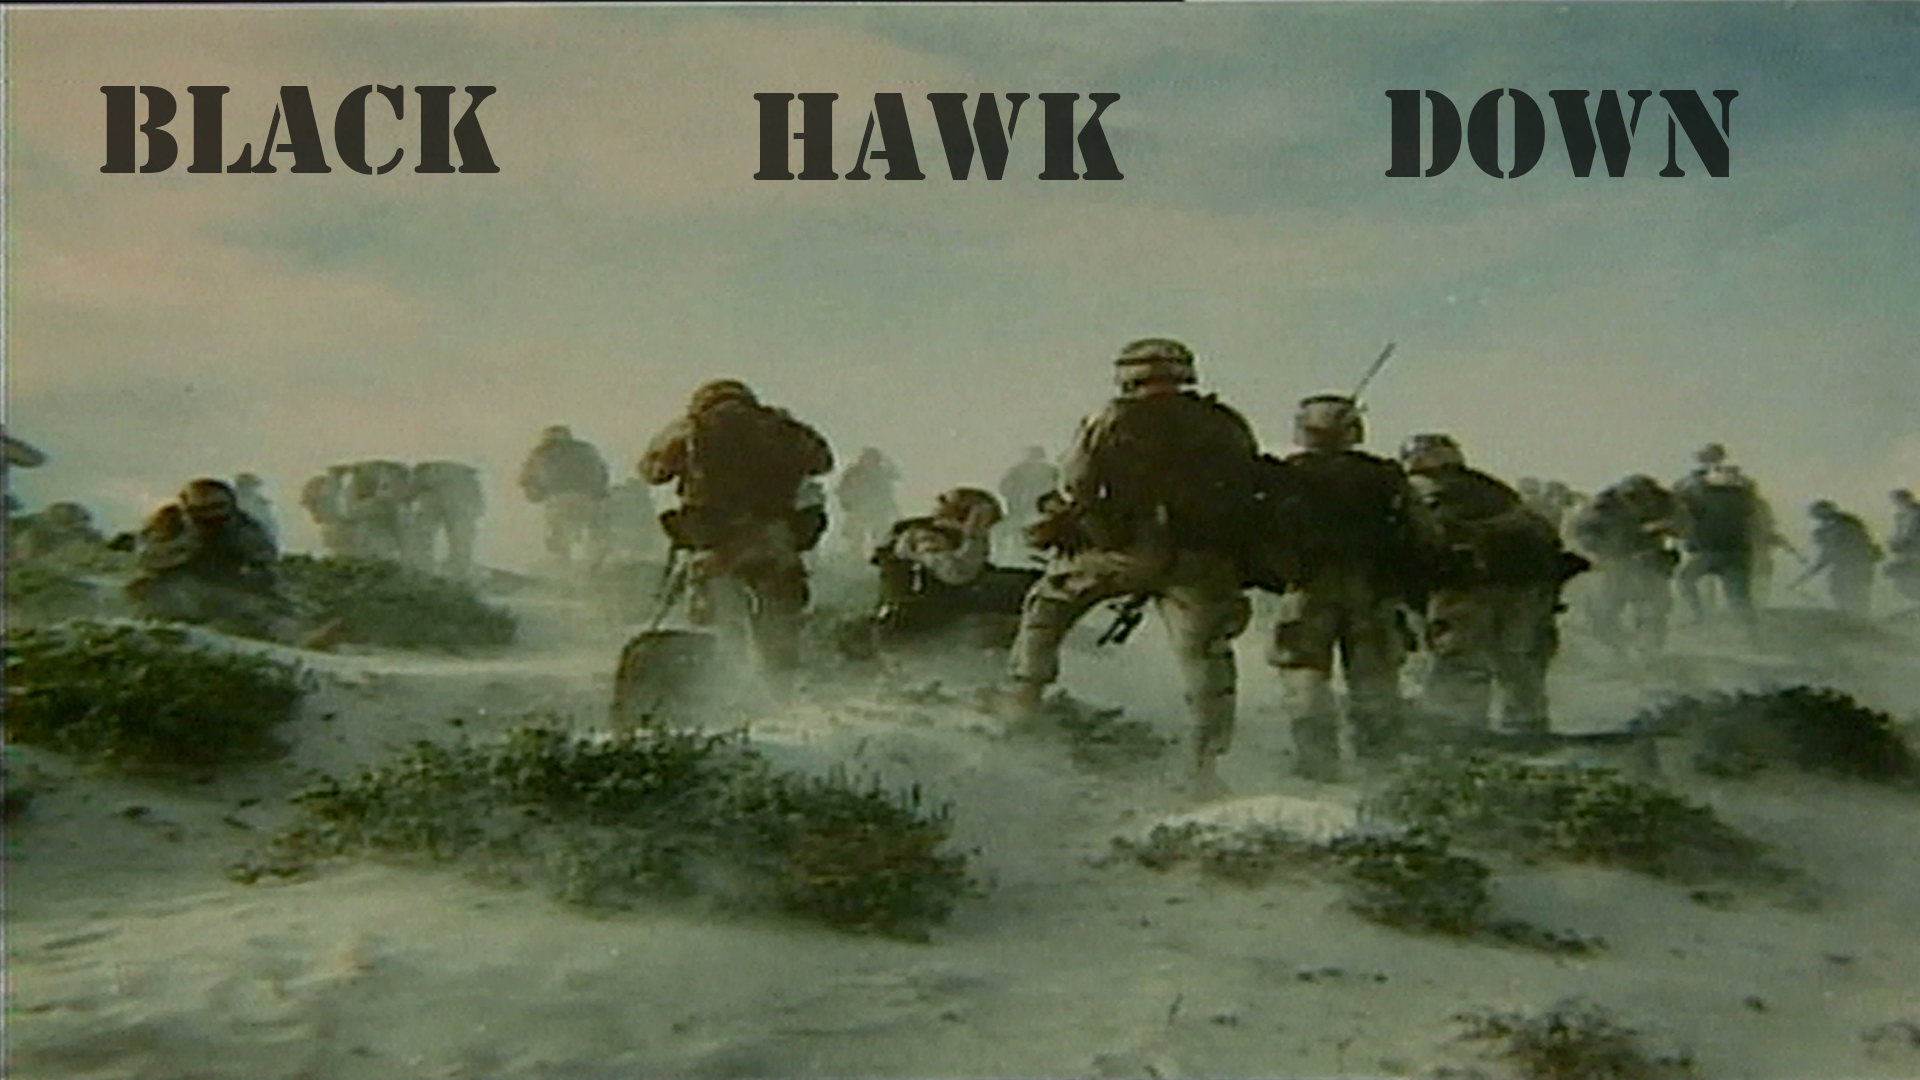 Black Hawk Down Movie - 1920x1080 Wallpaper - teahub.io